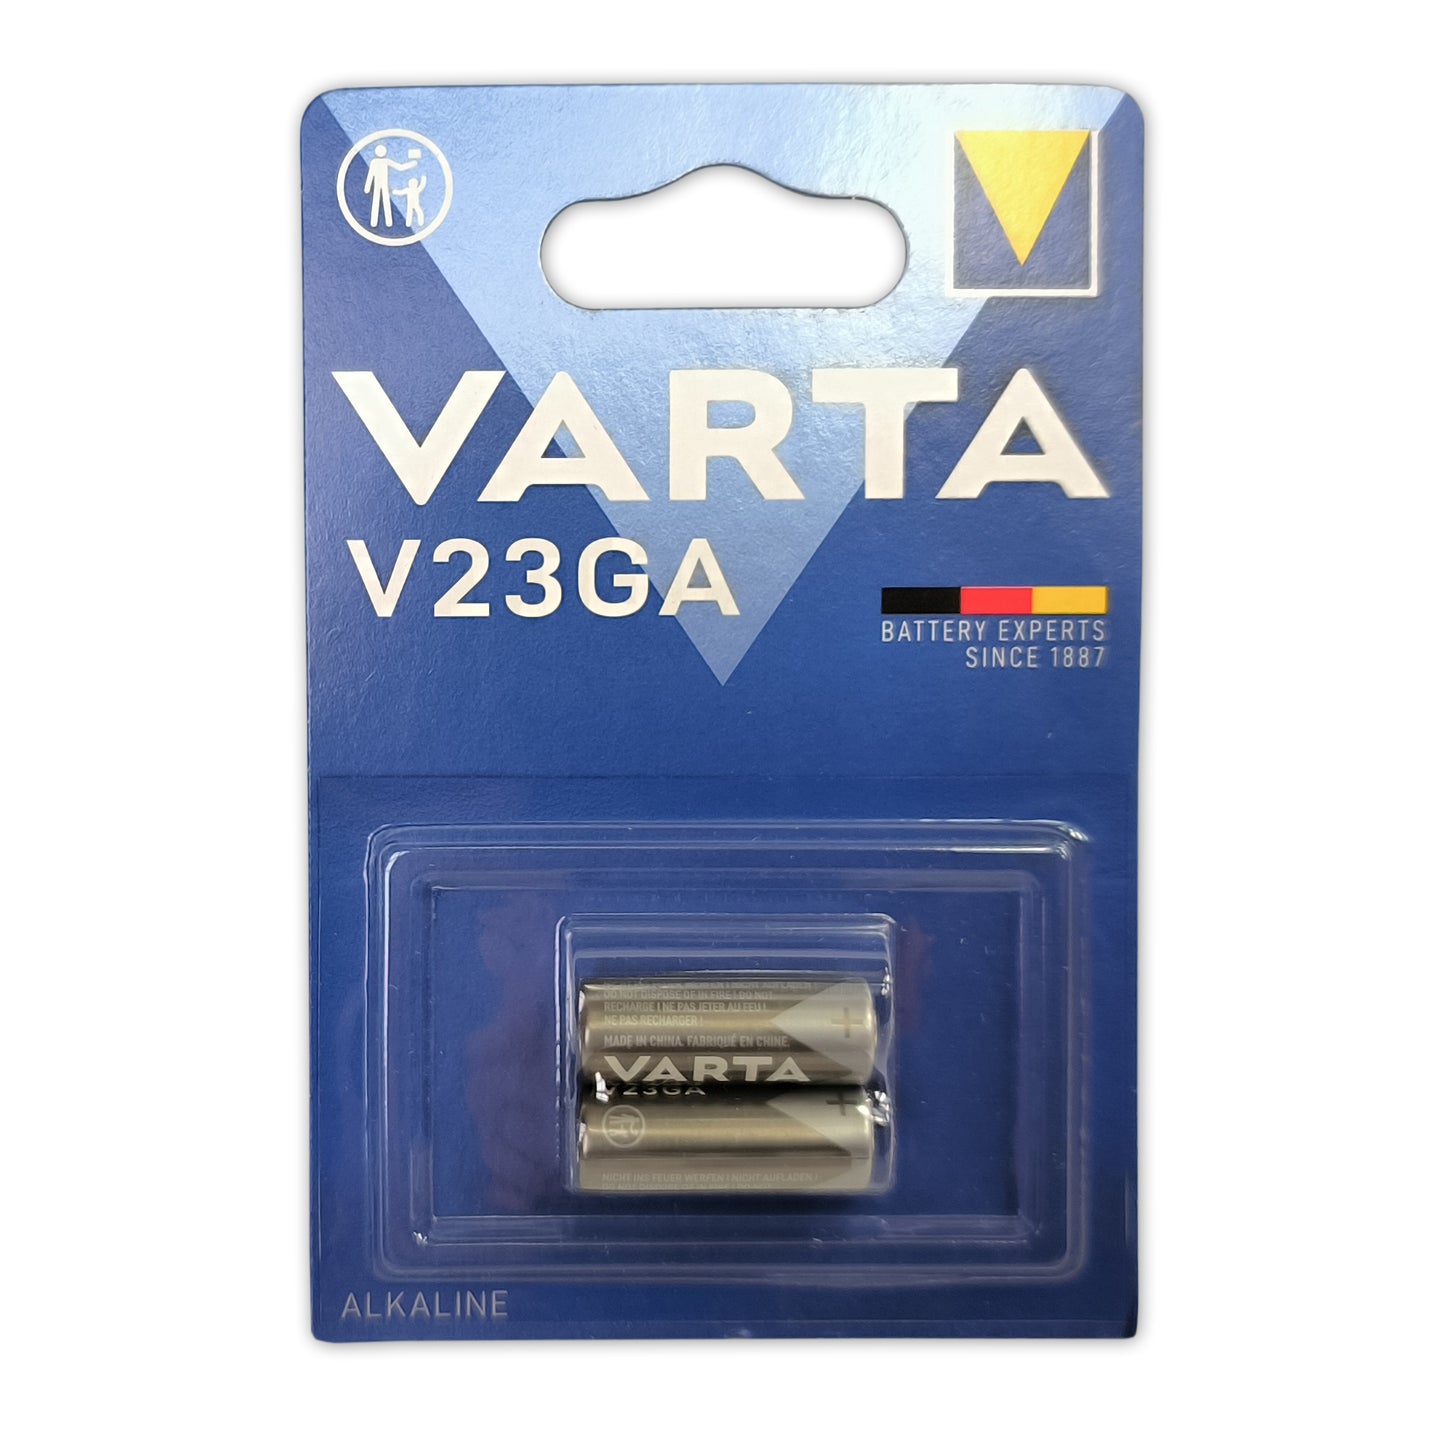 2x VARTA V23GA Batterie 12V Alkaline Batterie VARTA A23 MN21 23A P23GA 2-Stück